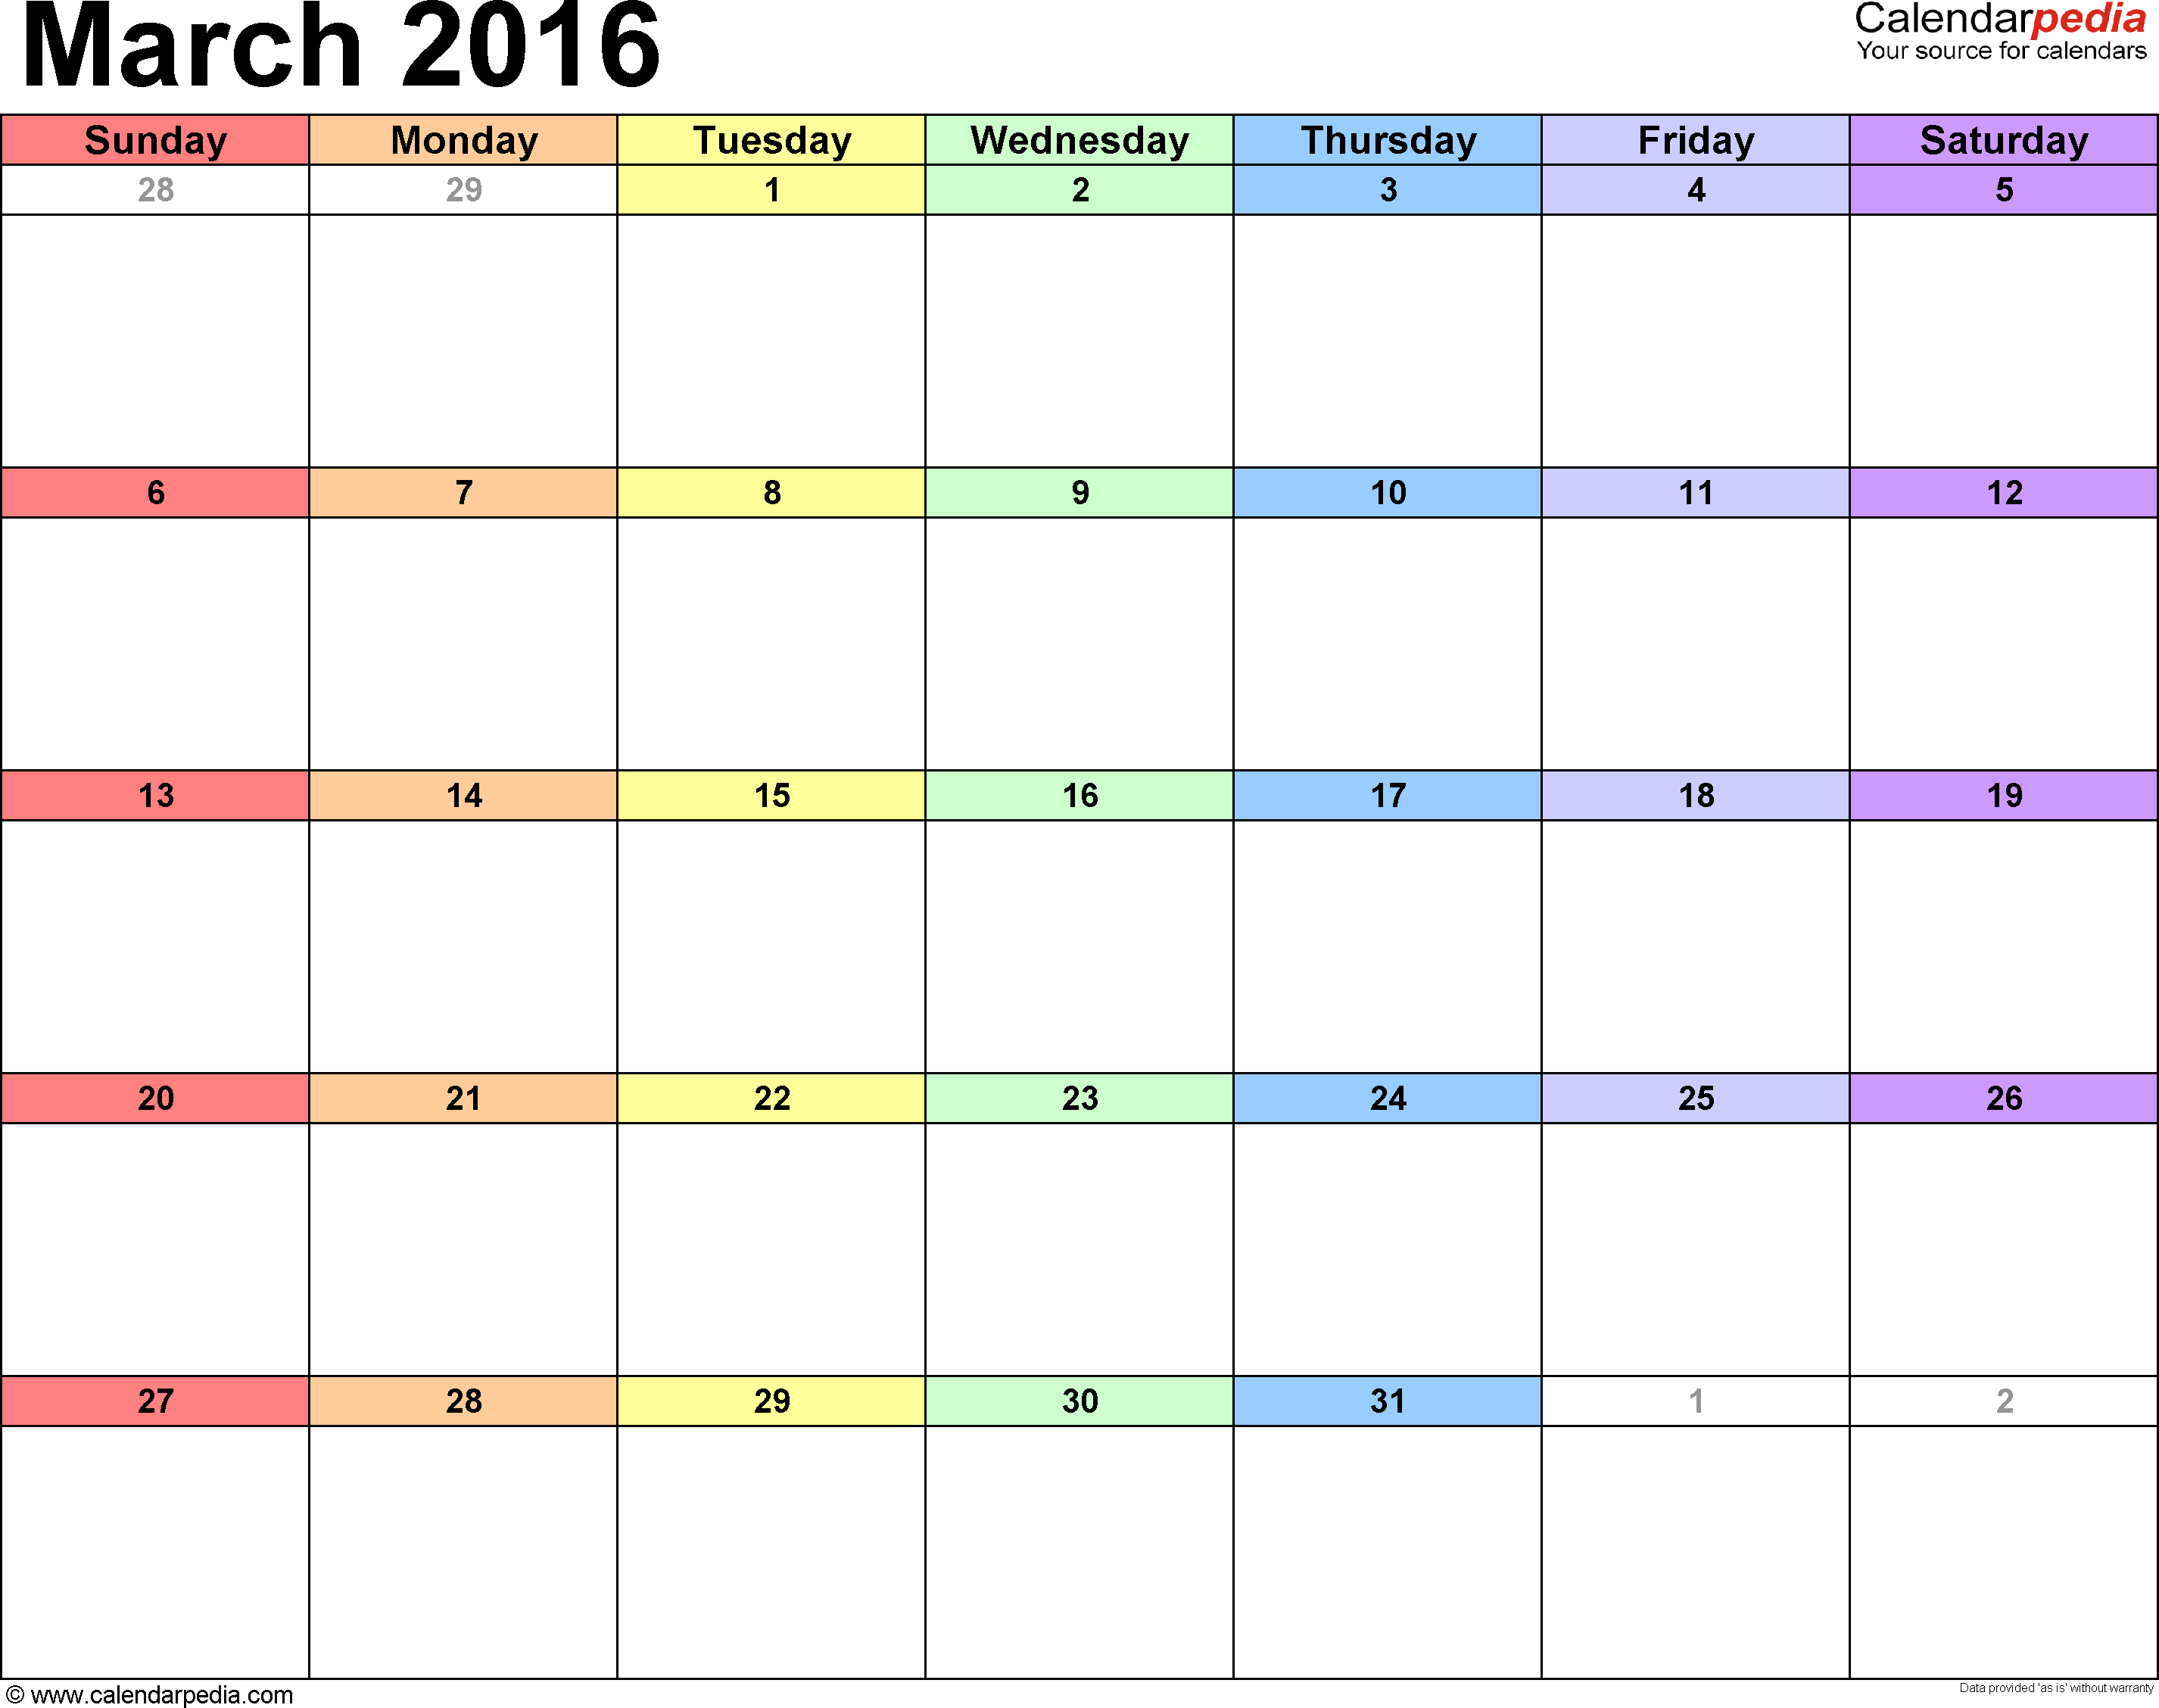 March 2016 Calendar Template